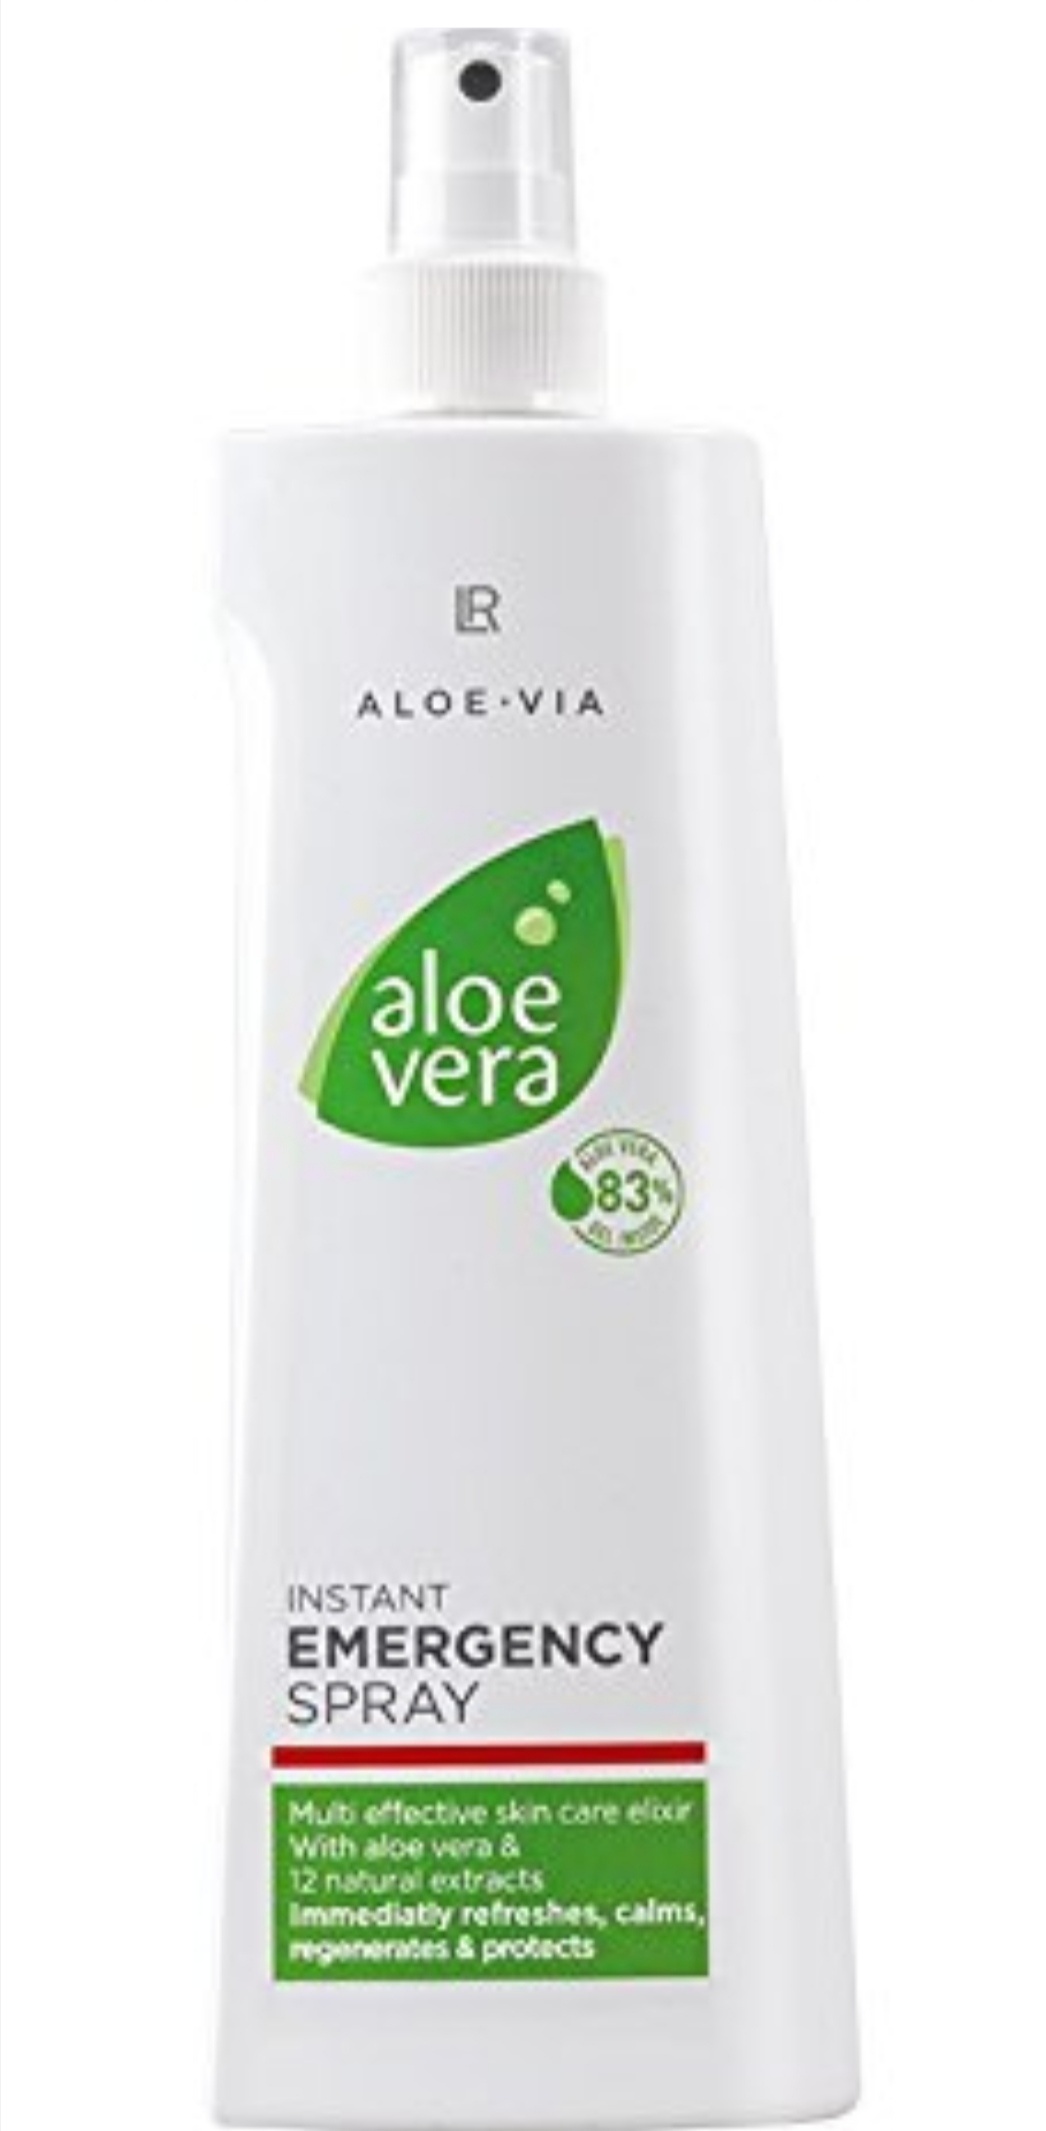 LR Aloe Via Aloe Vera Instant Emergency Spray